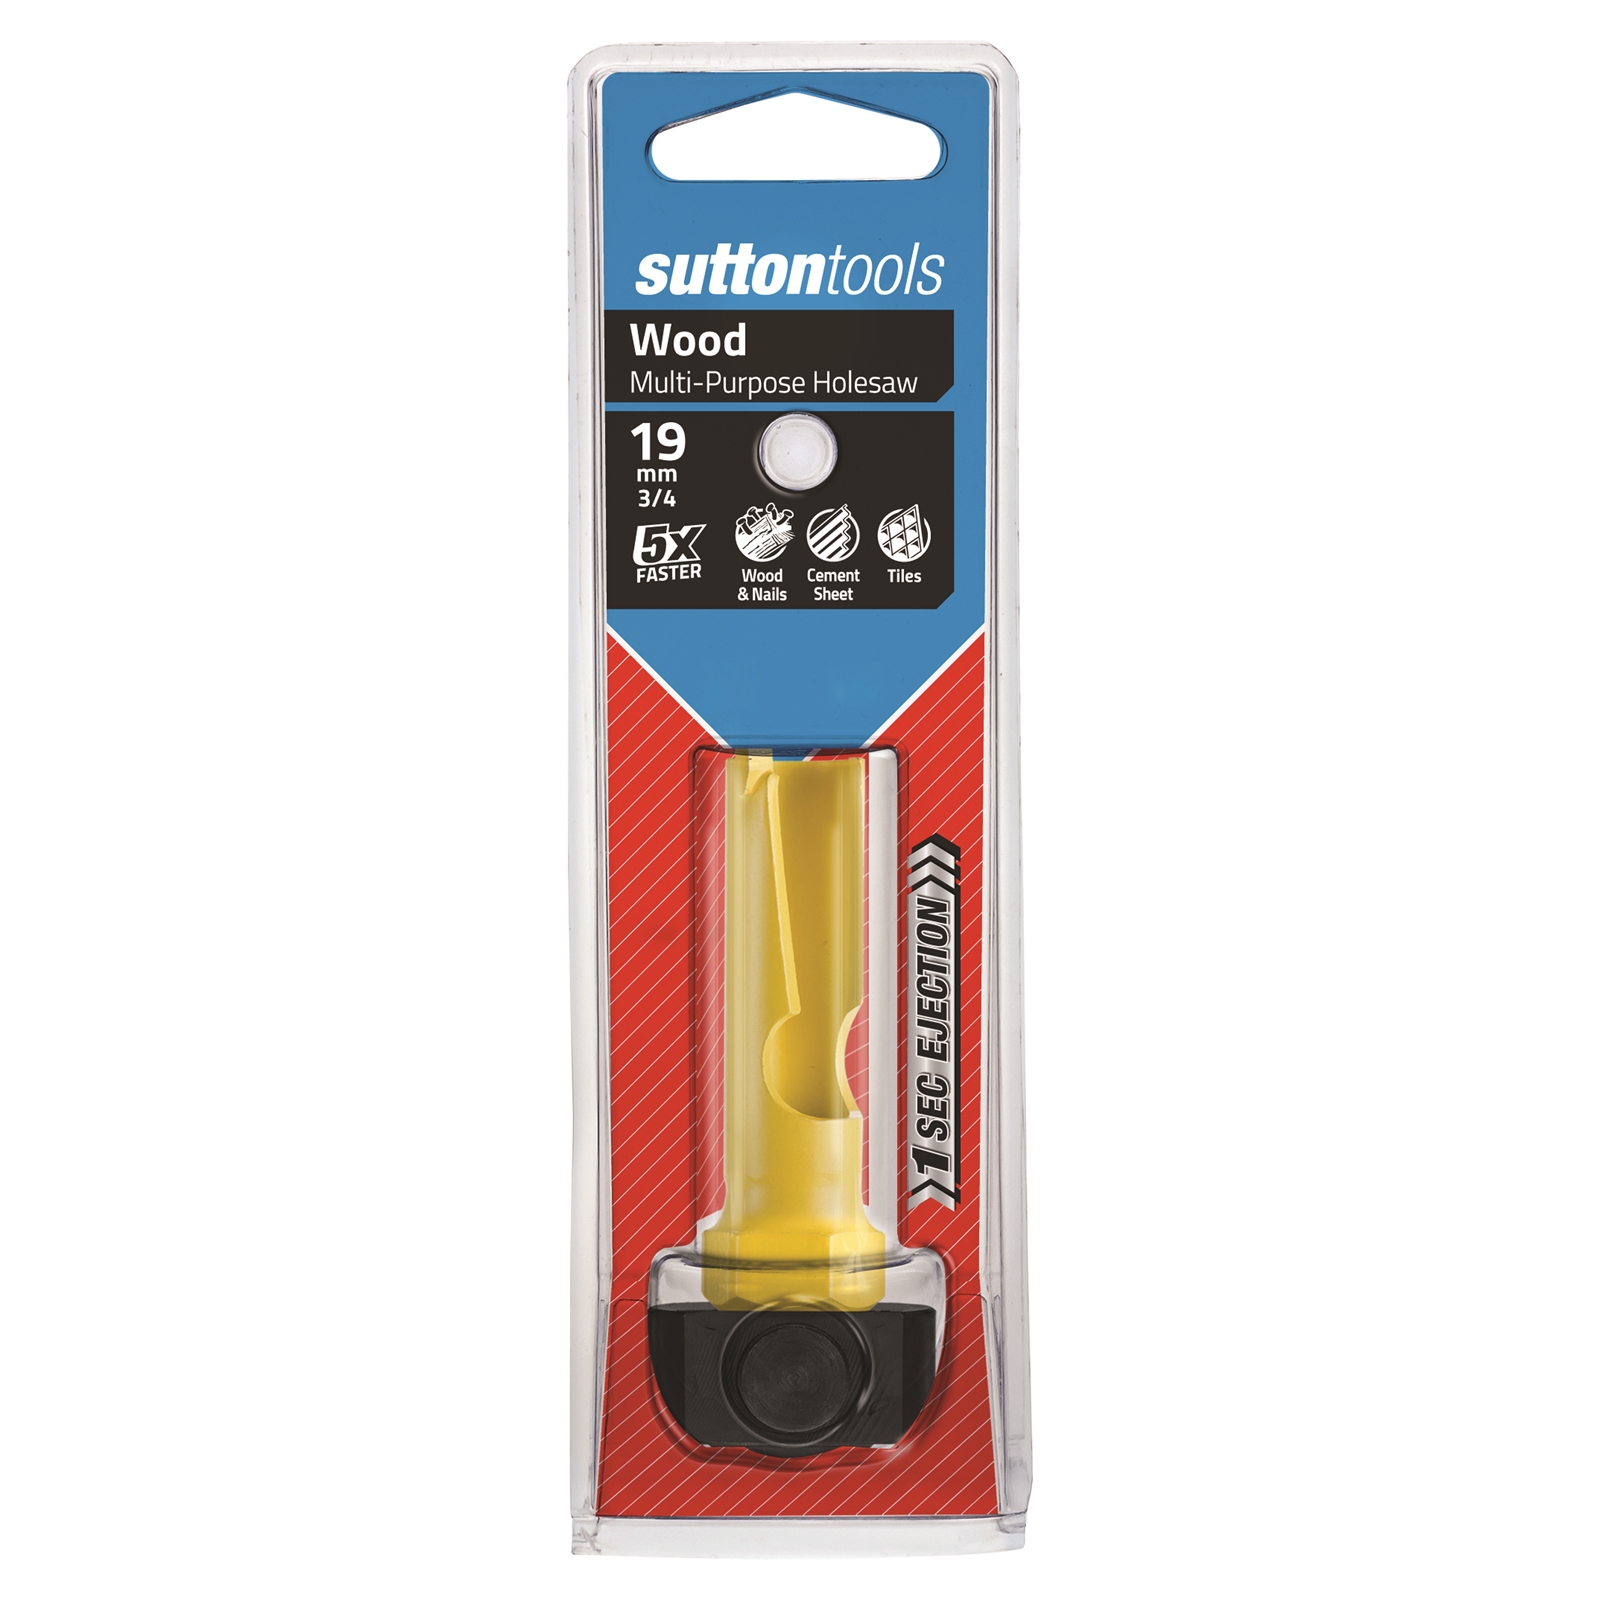 Sutton Tools 19mm Multipurpose Holesaw